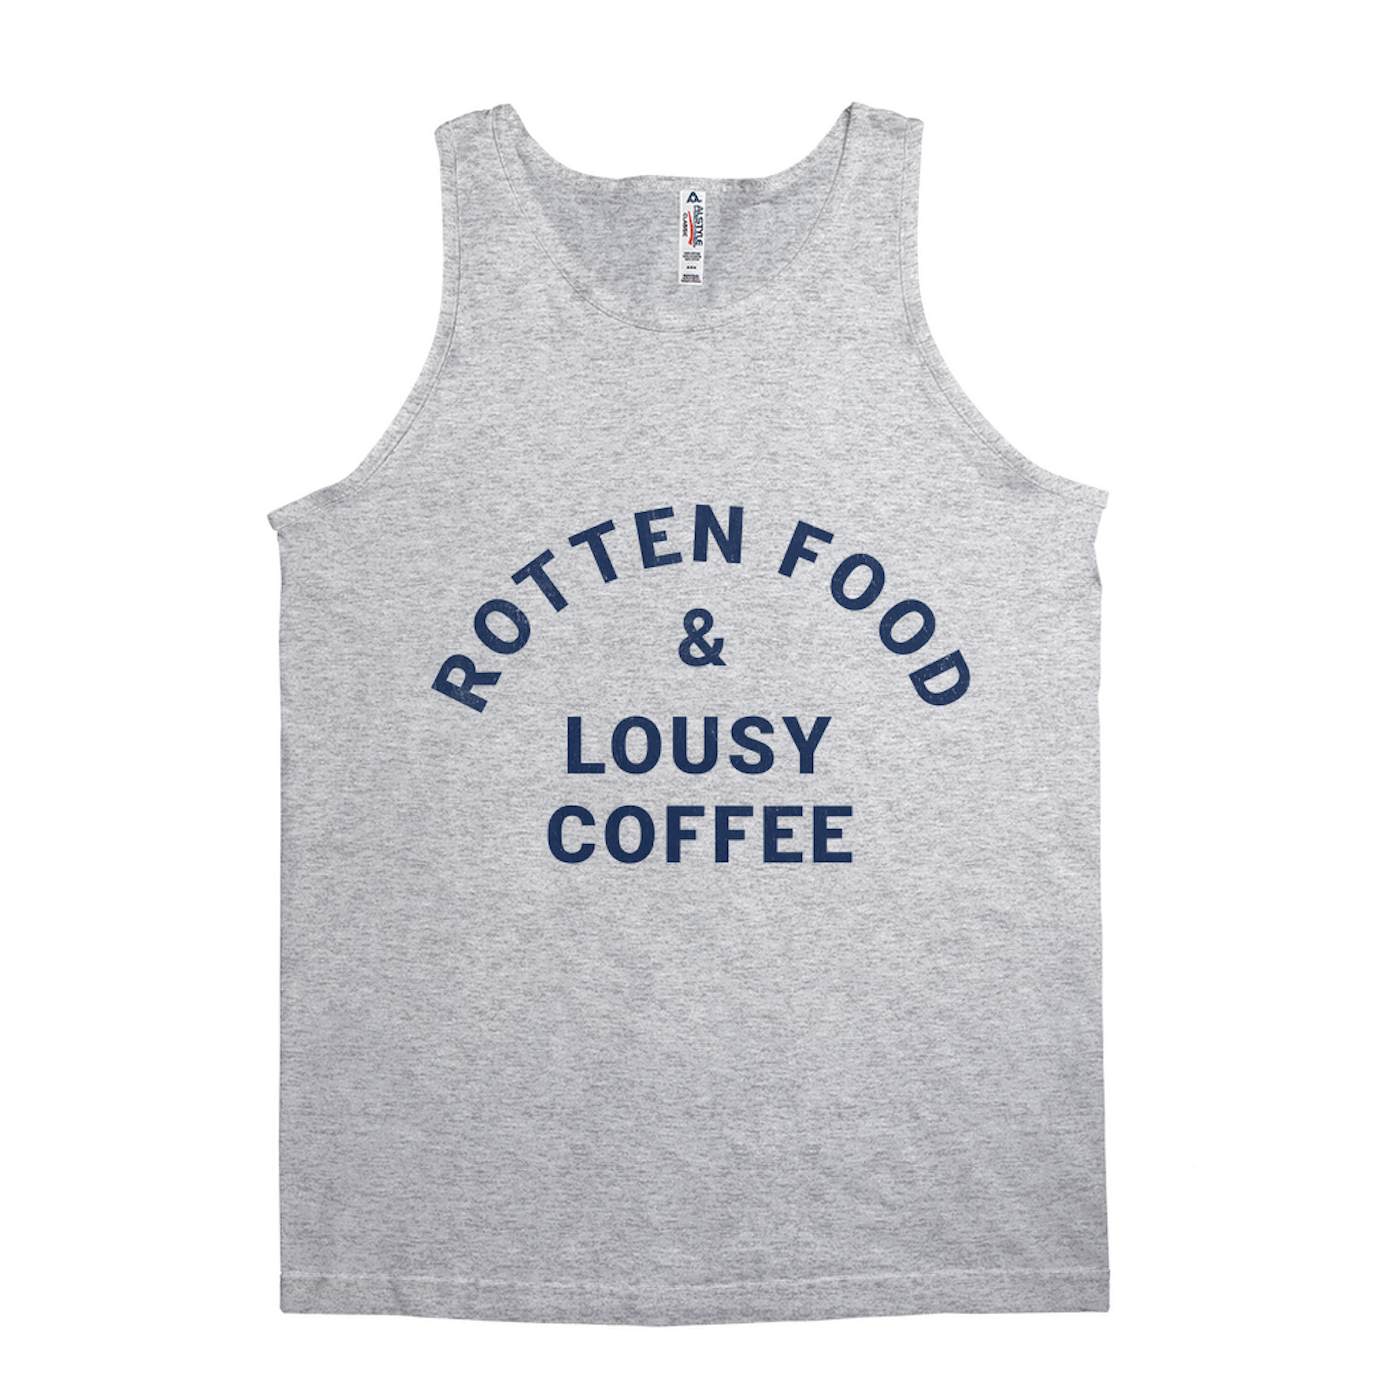 Joe Cocker Unisex Tank Top | Rotten Food & Lousy Coffee Tee worn by Joe Cocker Shirt